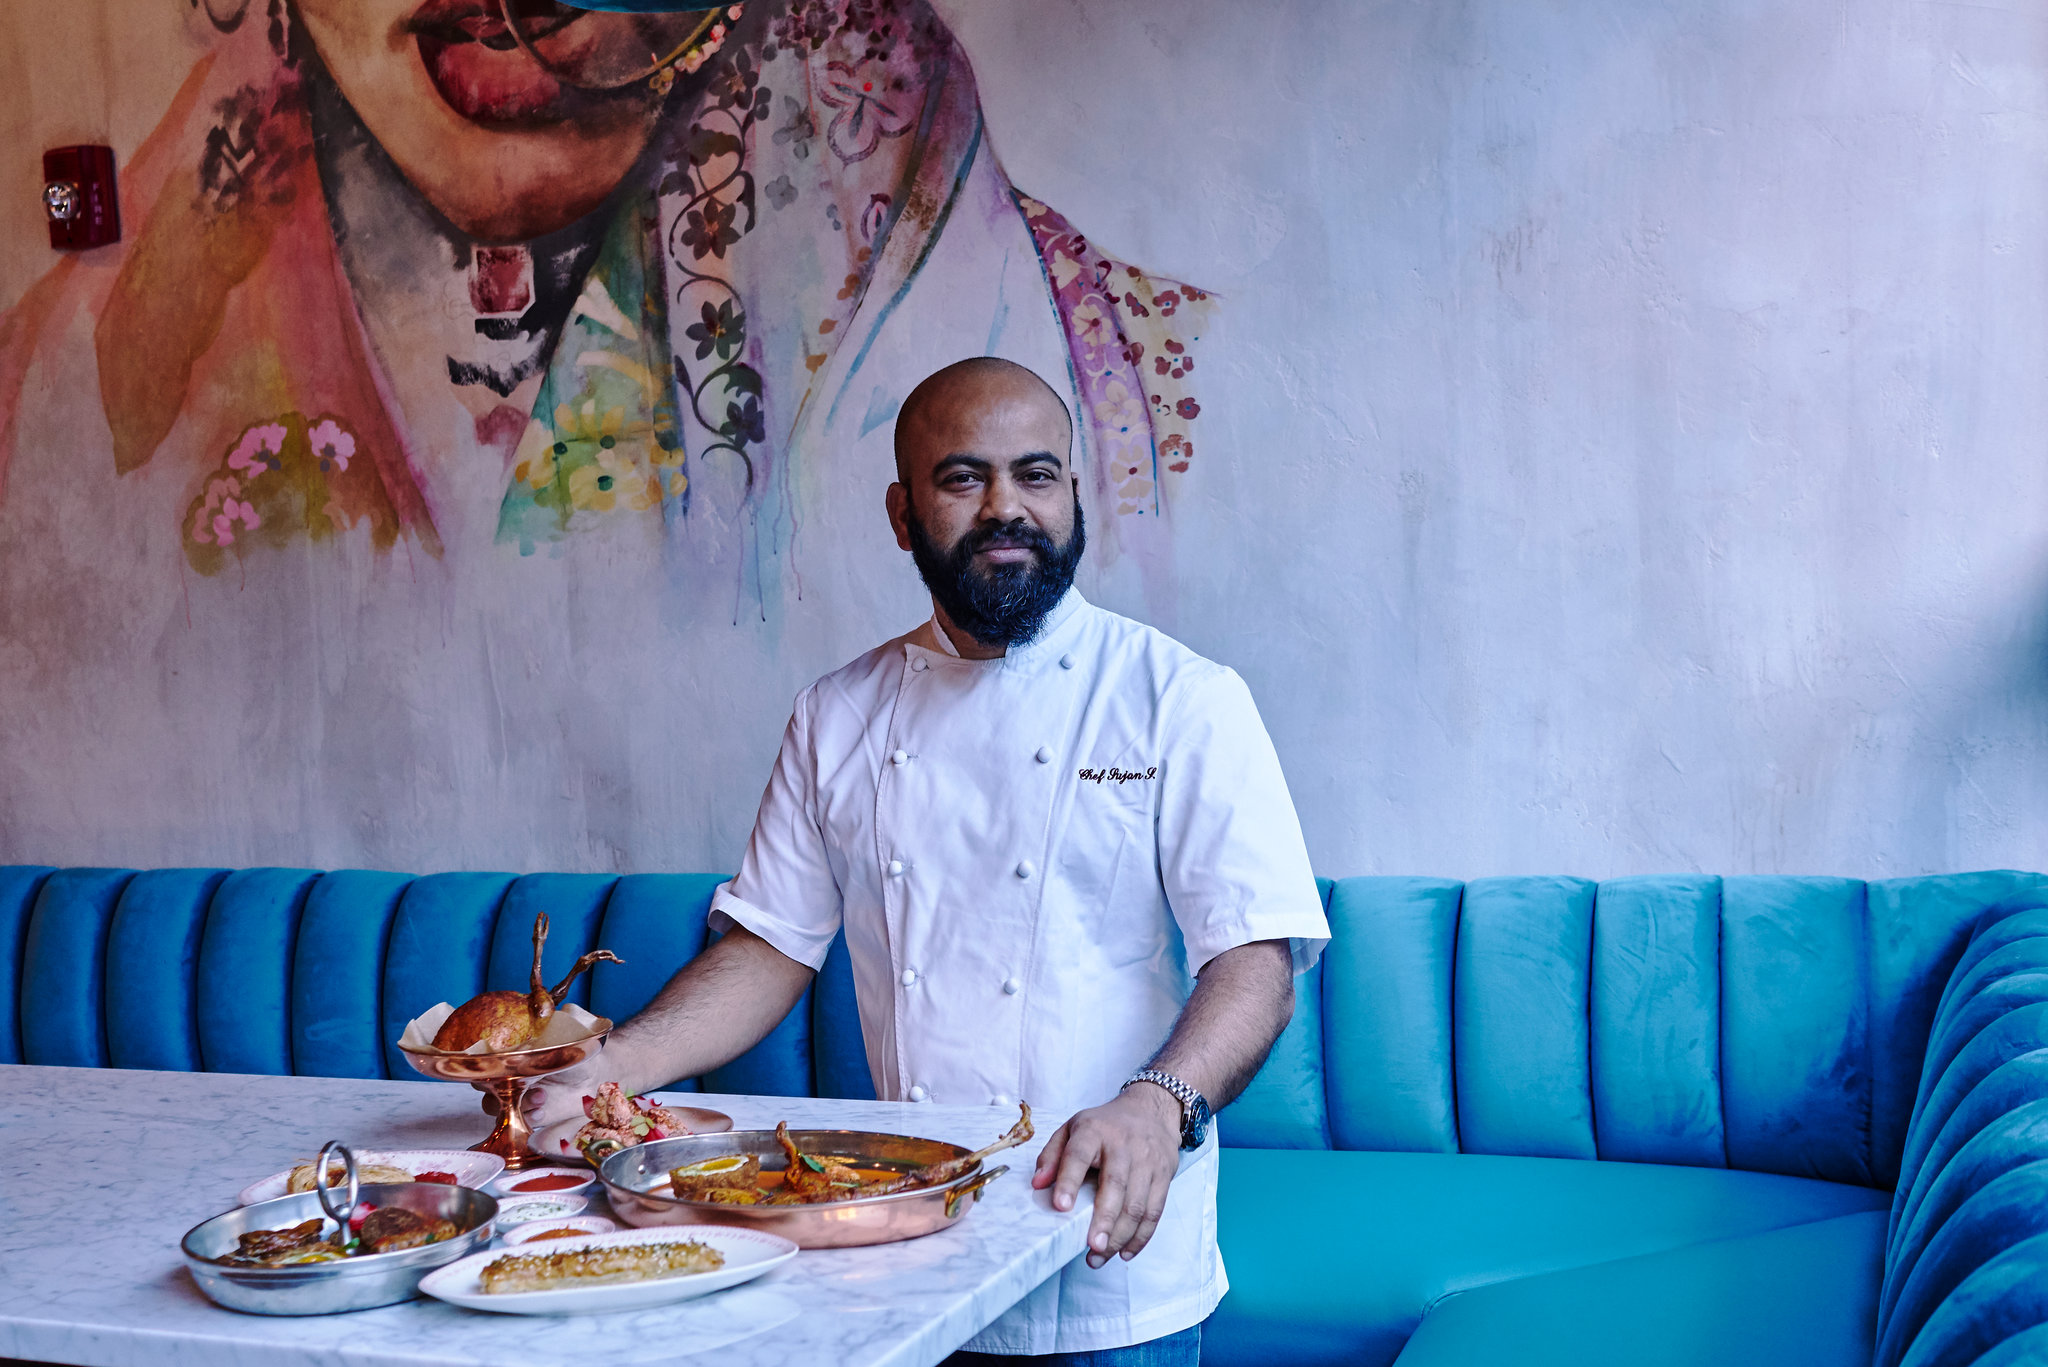 foodies delight baar baar restaurants indian cuisine experience in new york